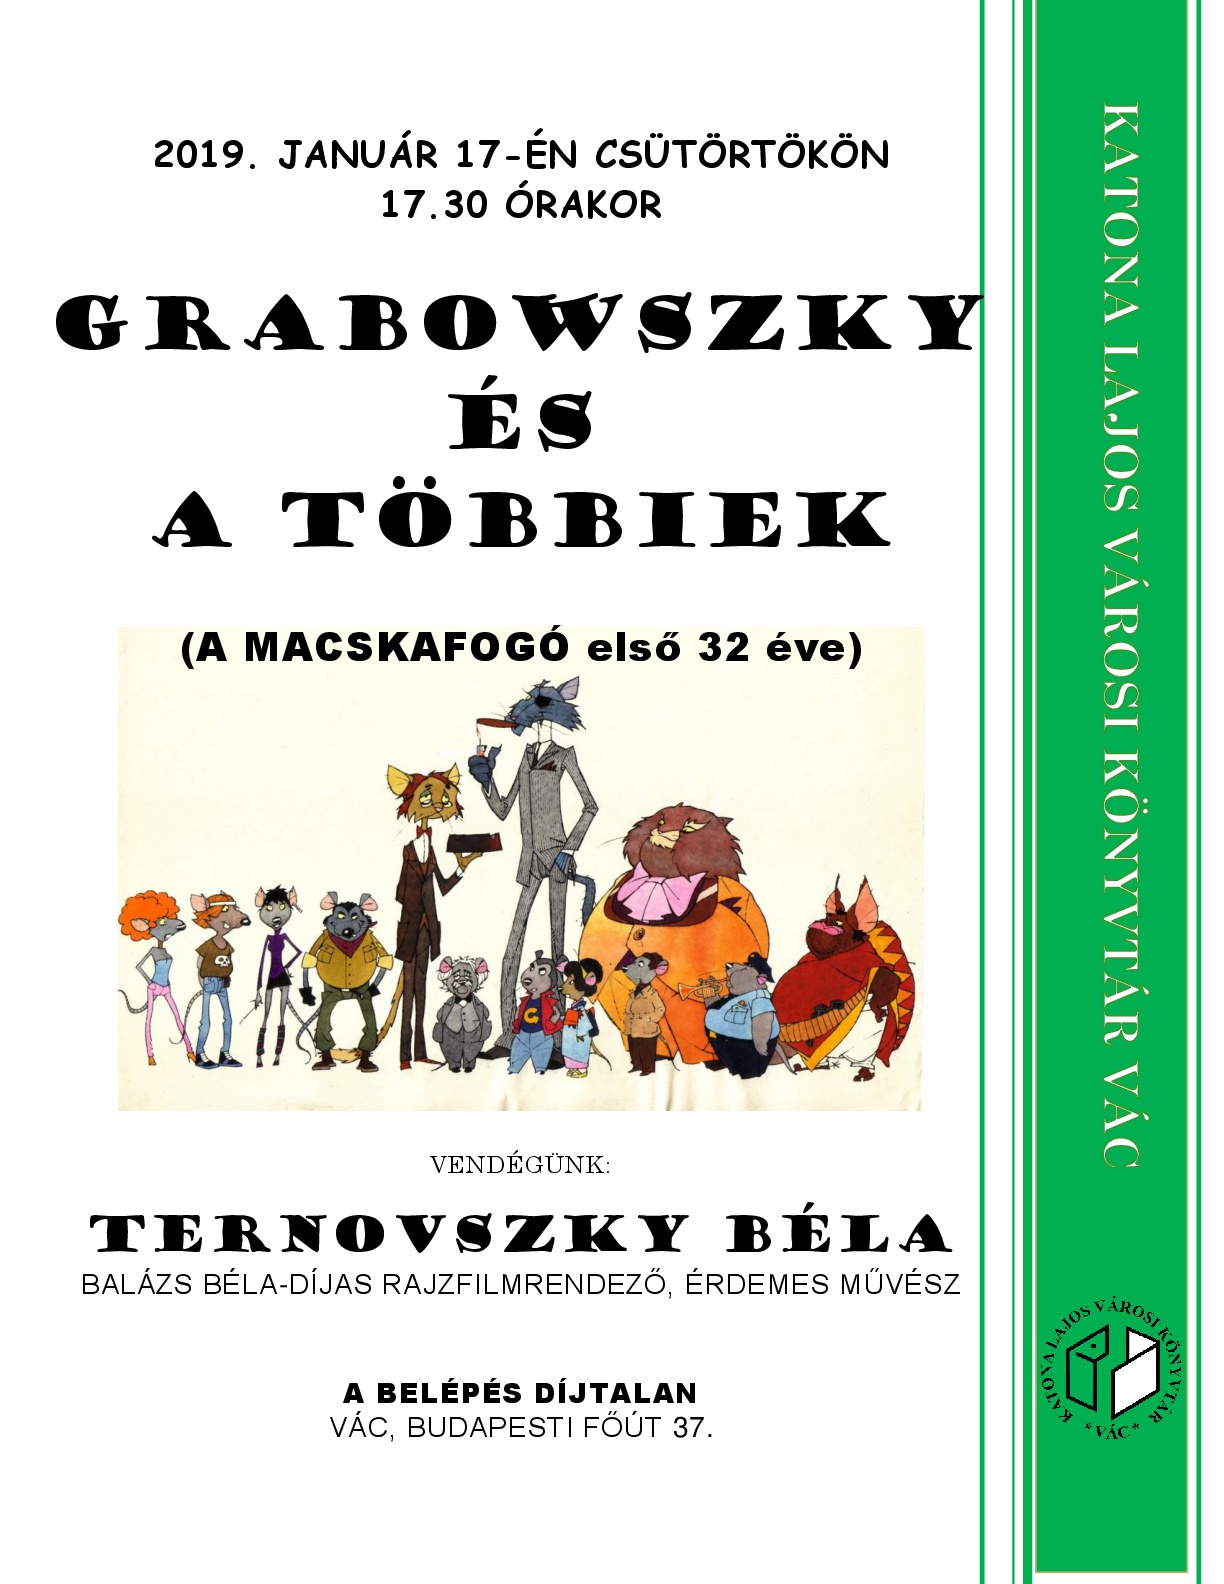 Ternovszky Béla előadása